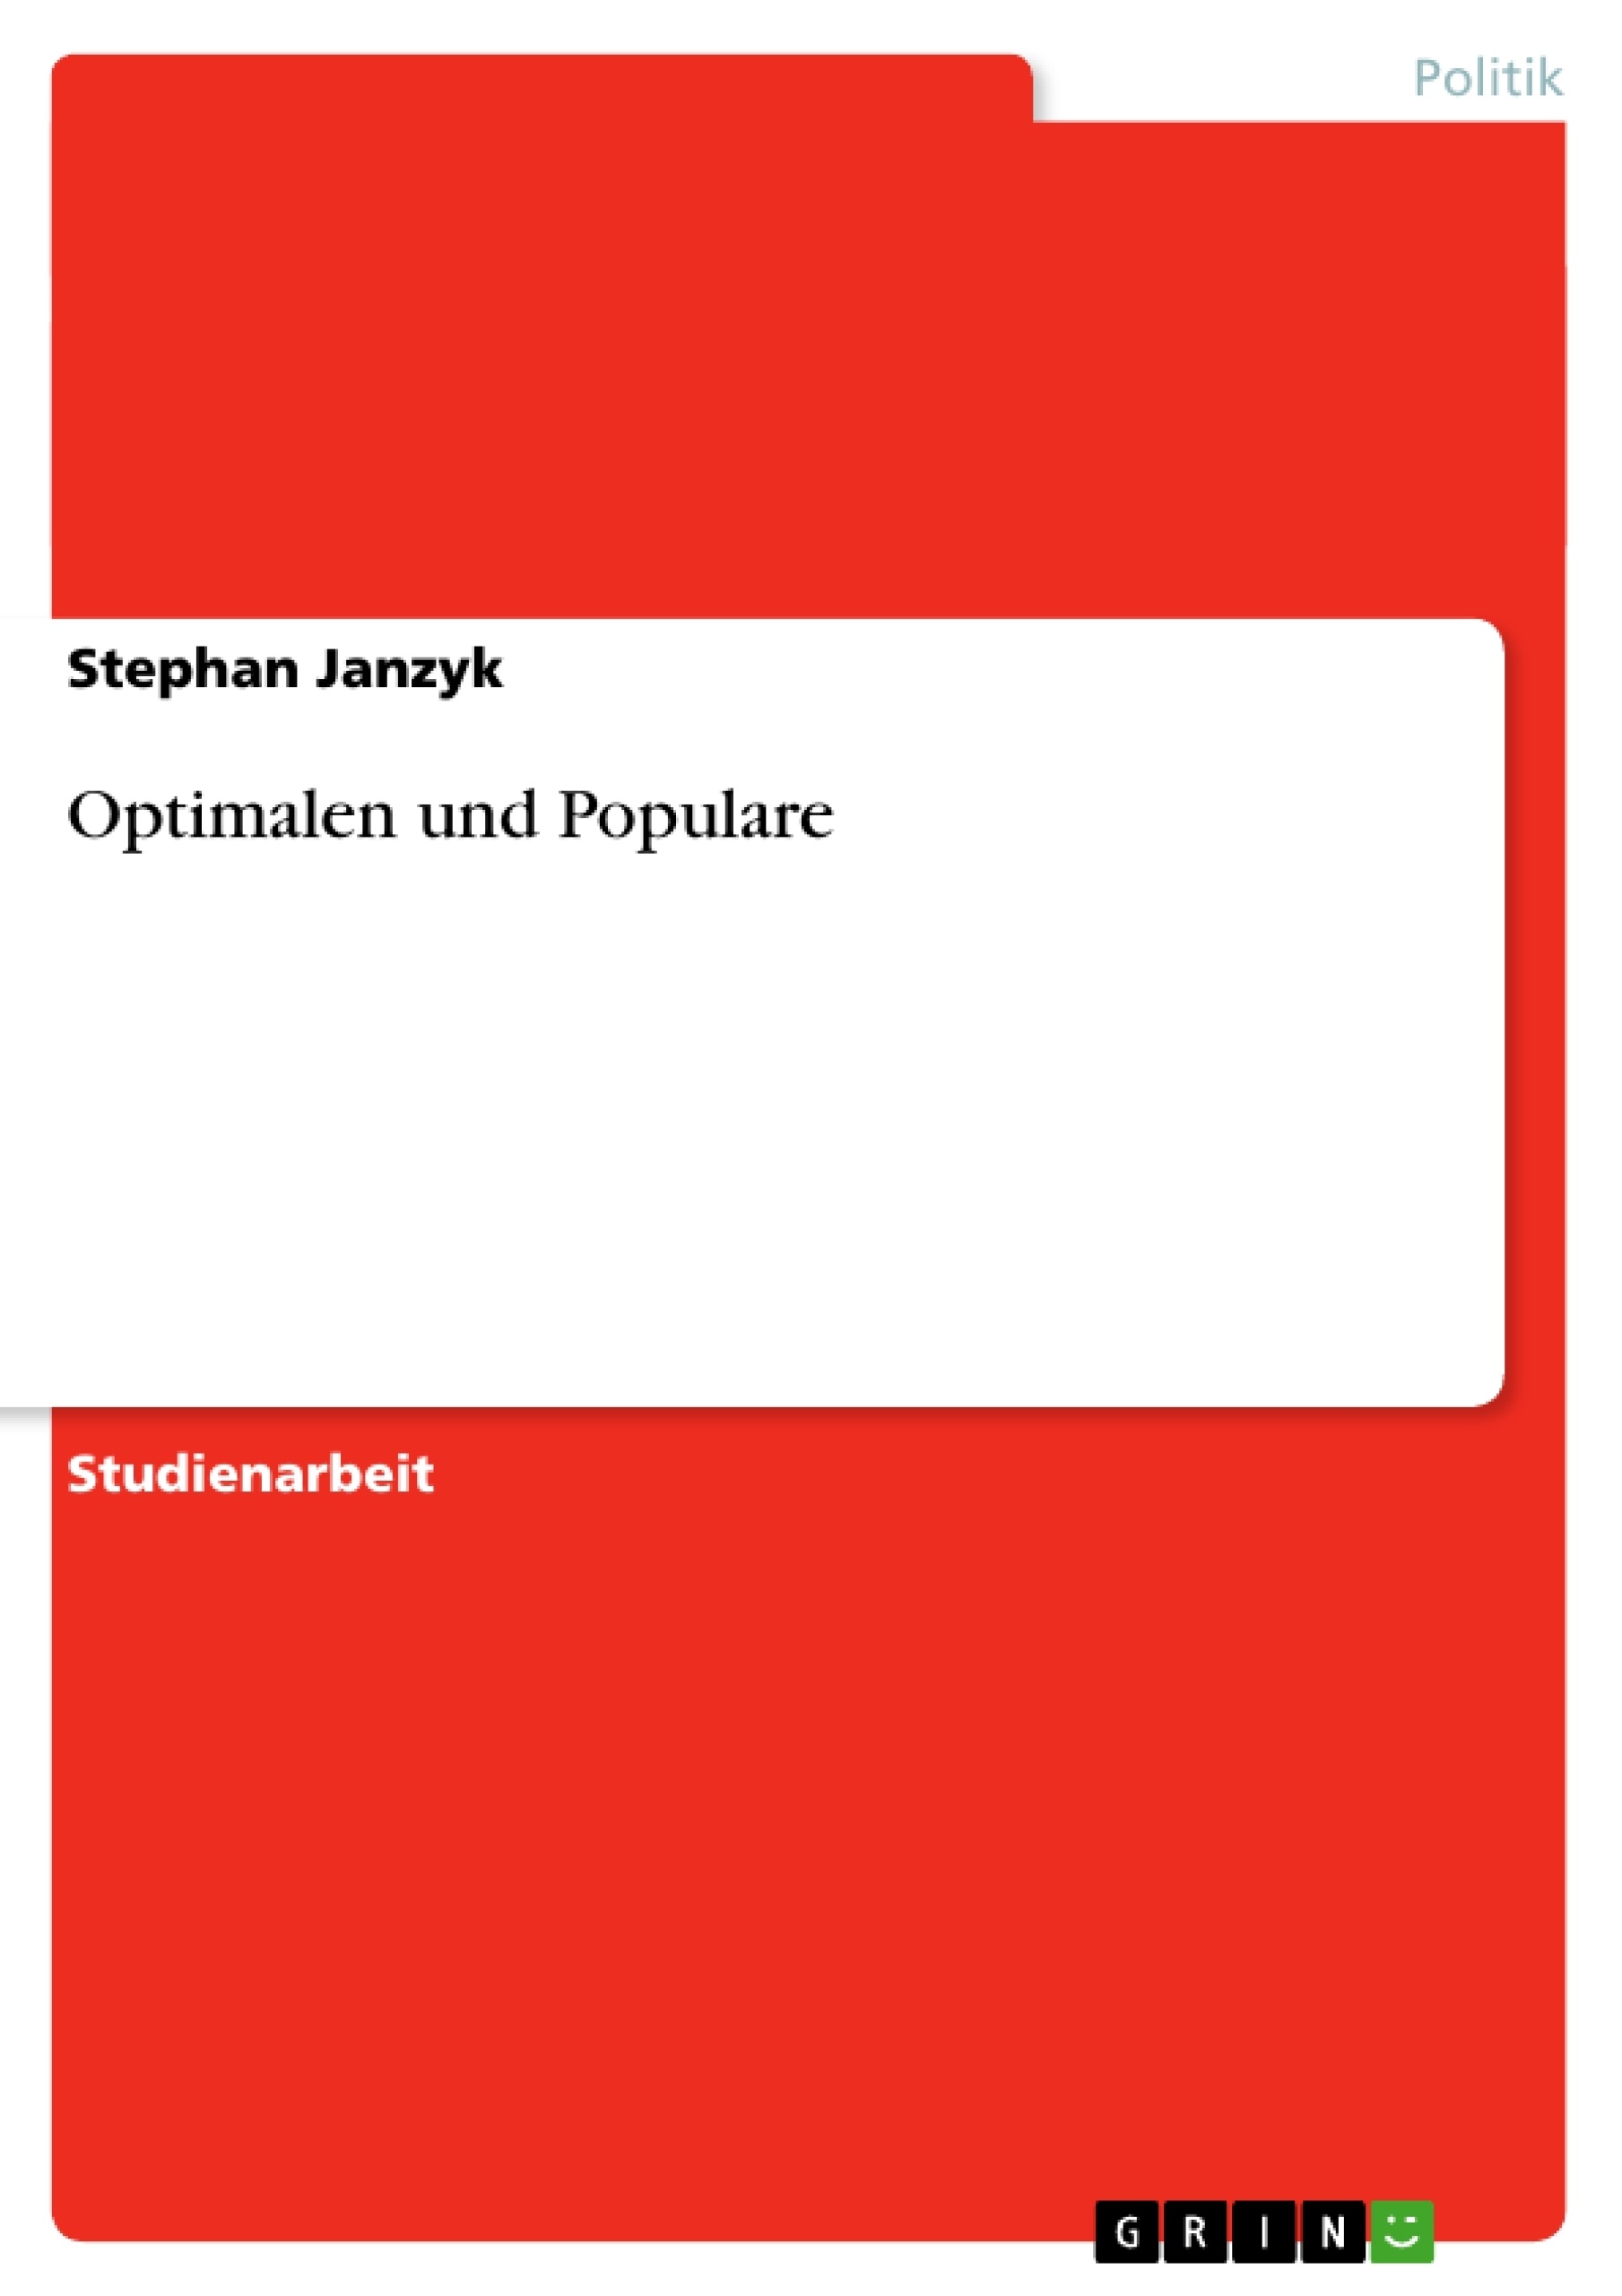 Title: Optimalen und Populare